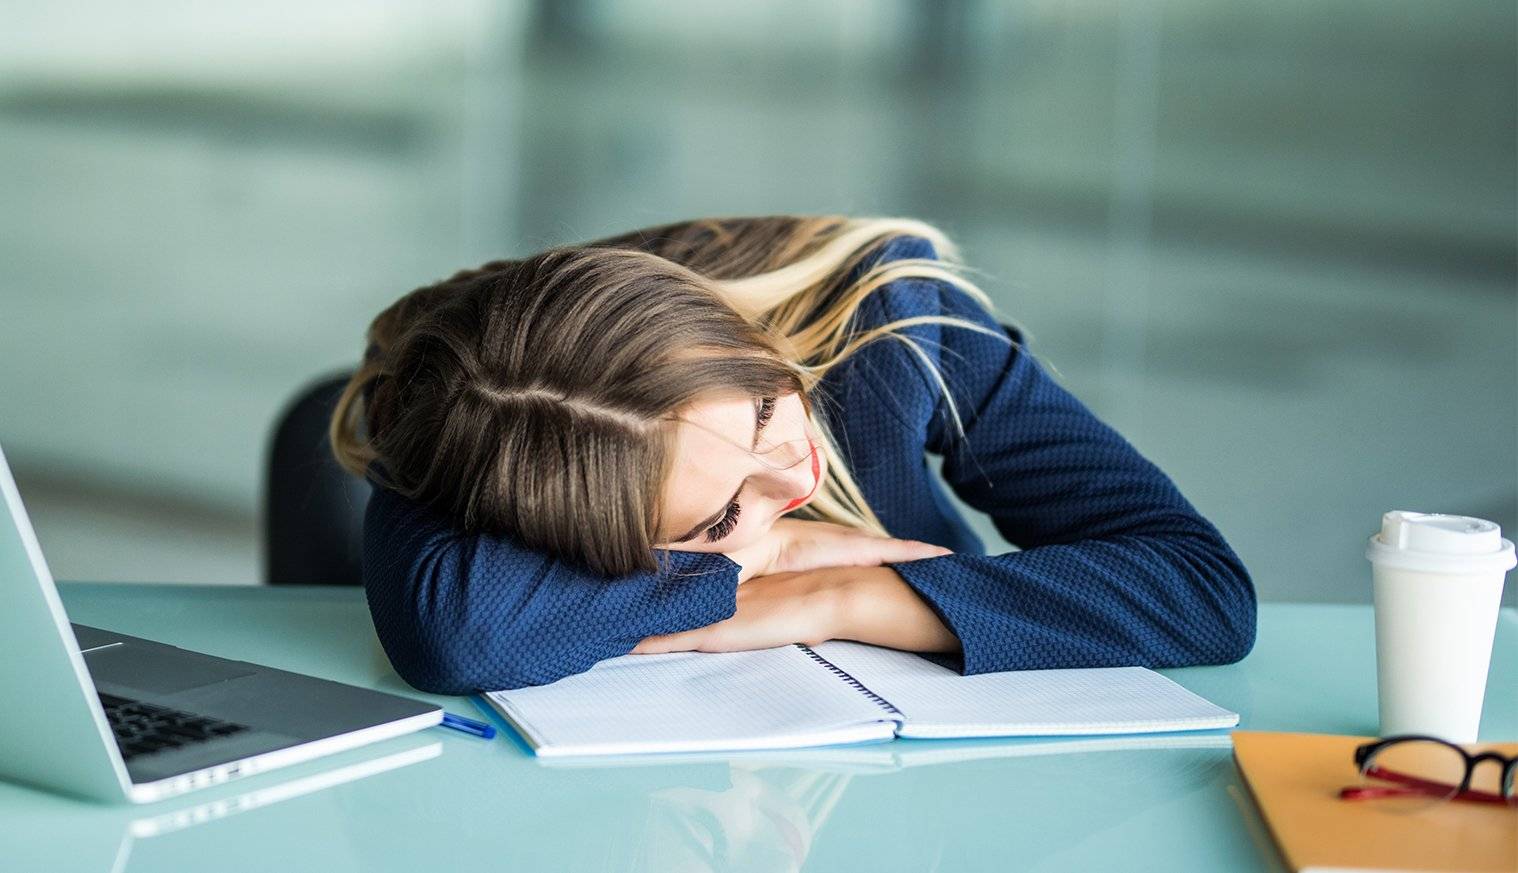 ᐈ работа ᐈ усталость на работе, как избавиться от усталости и сонливости ᐈ читать онлайн журнал